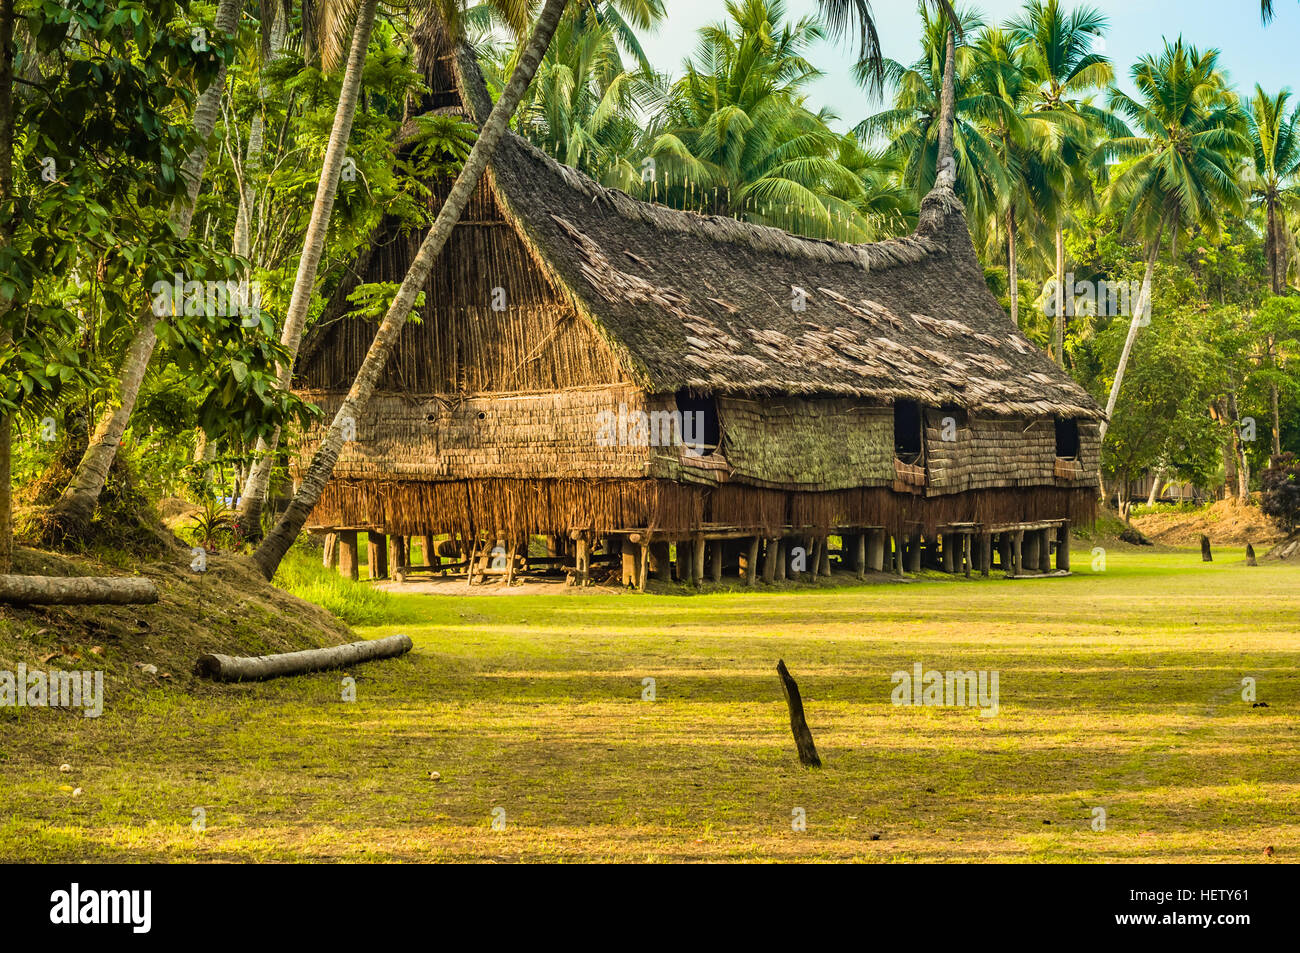 Großes Haus aus Stroh und Holz, umgeben von Palmen in Palembe, Sepik Fluss in Papua-Neuguinea. In dieser Region kann man nur Menschen aus Isol treffen. Stockfoto